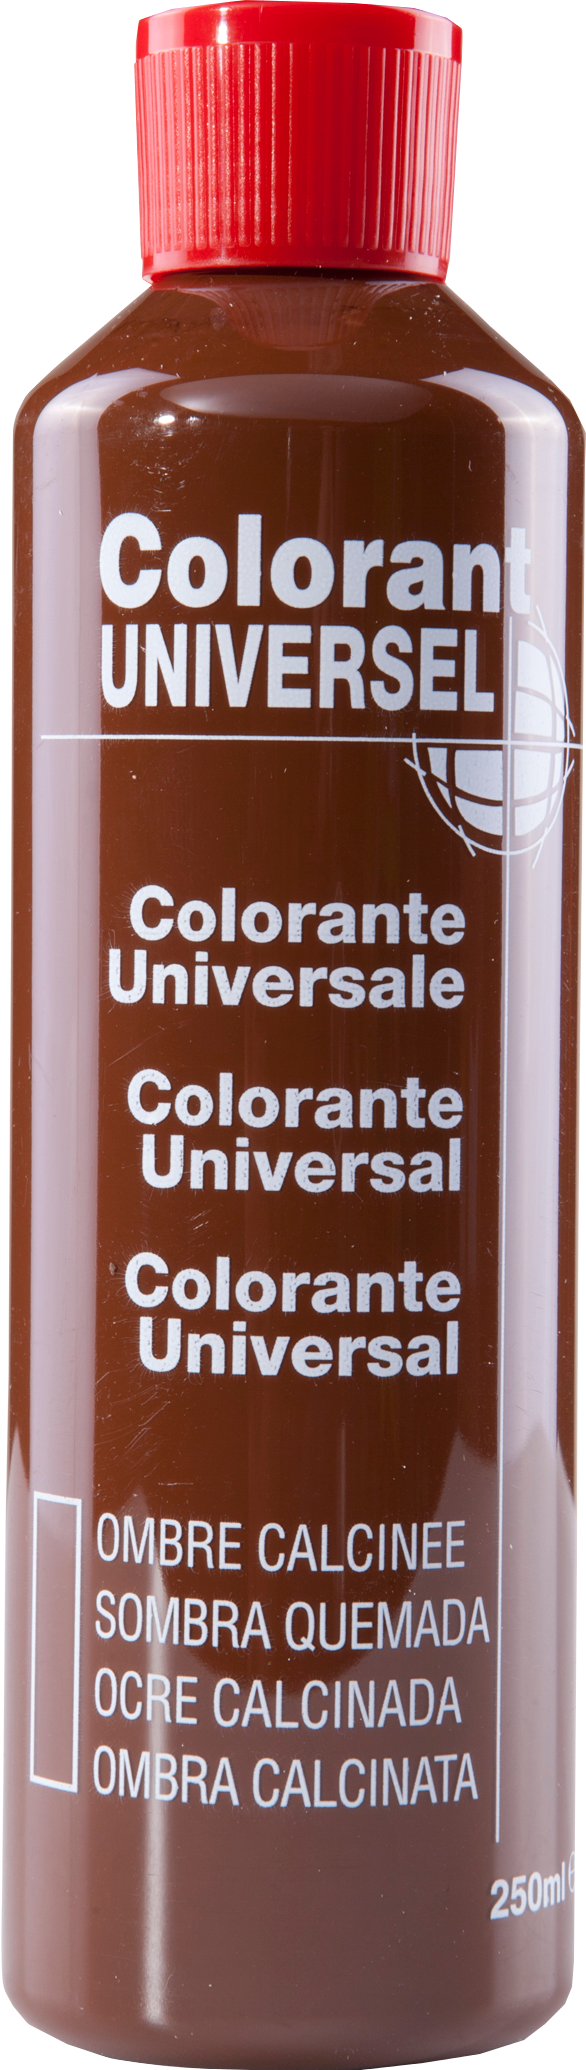 Colorant universel pour peinture ombre calcinée 250ml